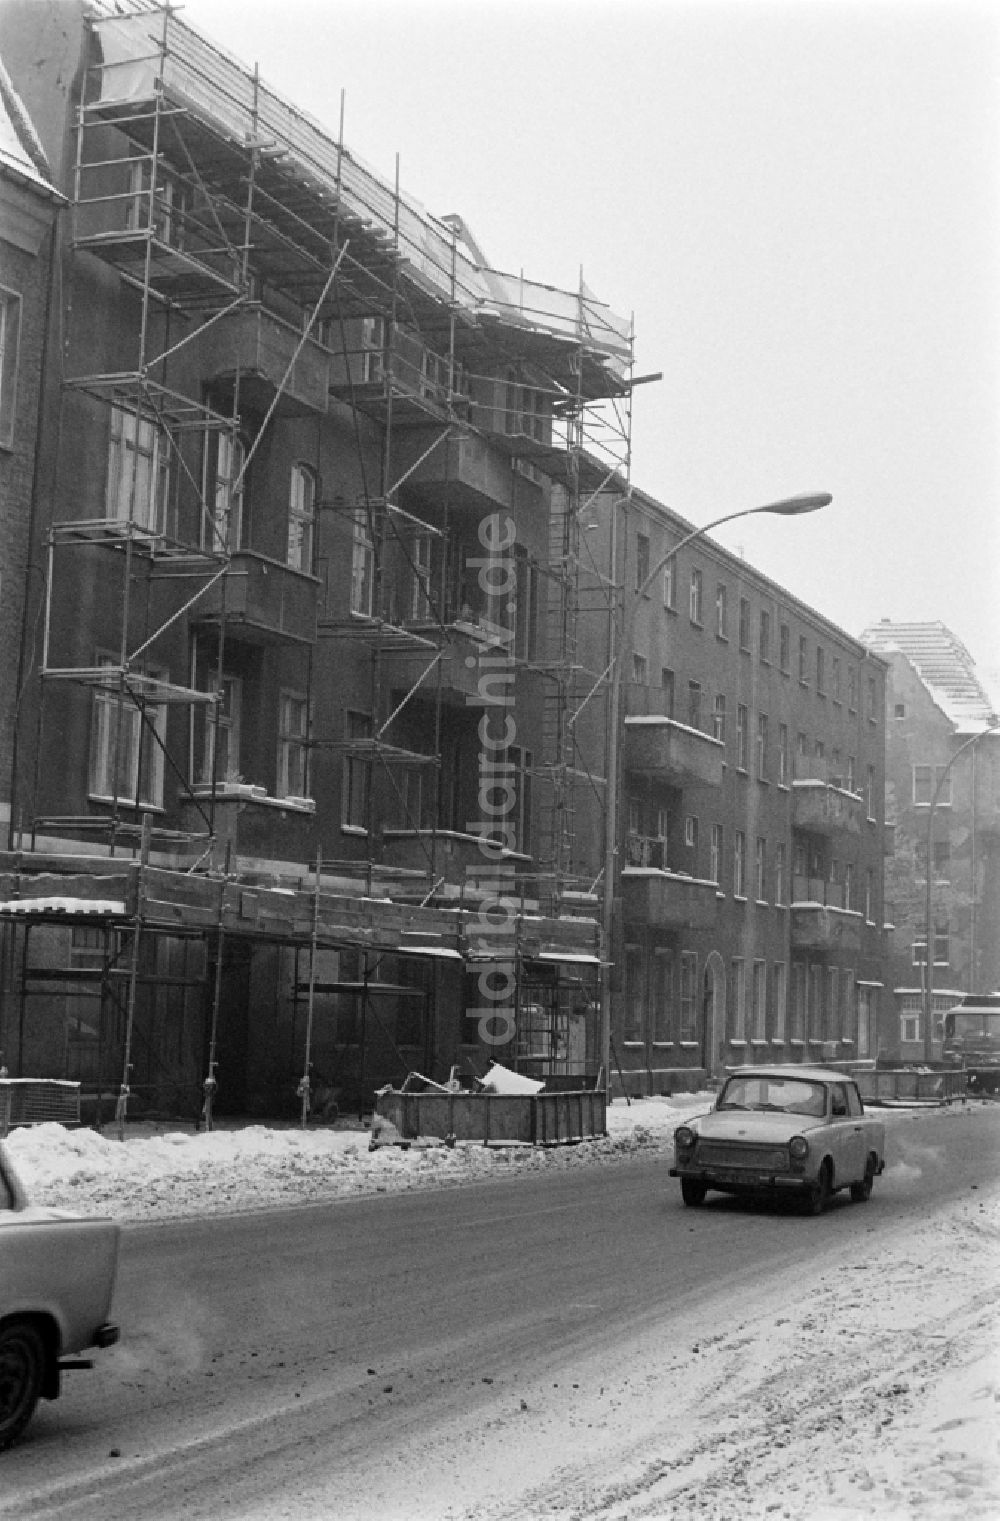 DDR-Fotoarchiv: Berlin - Winter in der Siemensstraße im Ortsteil Treptow-Köpenick in Berlin, der ehemaligen Hauptstadt der DDR, Deutsche Demokratische Republik